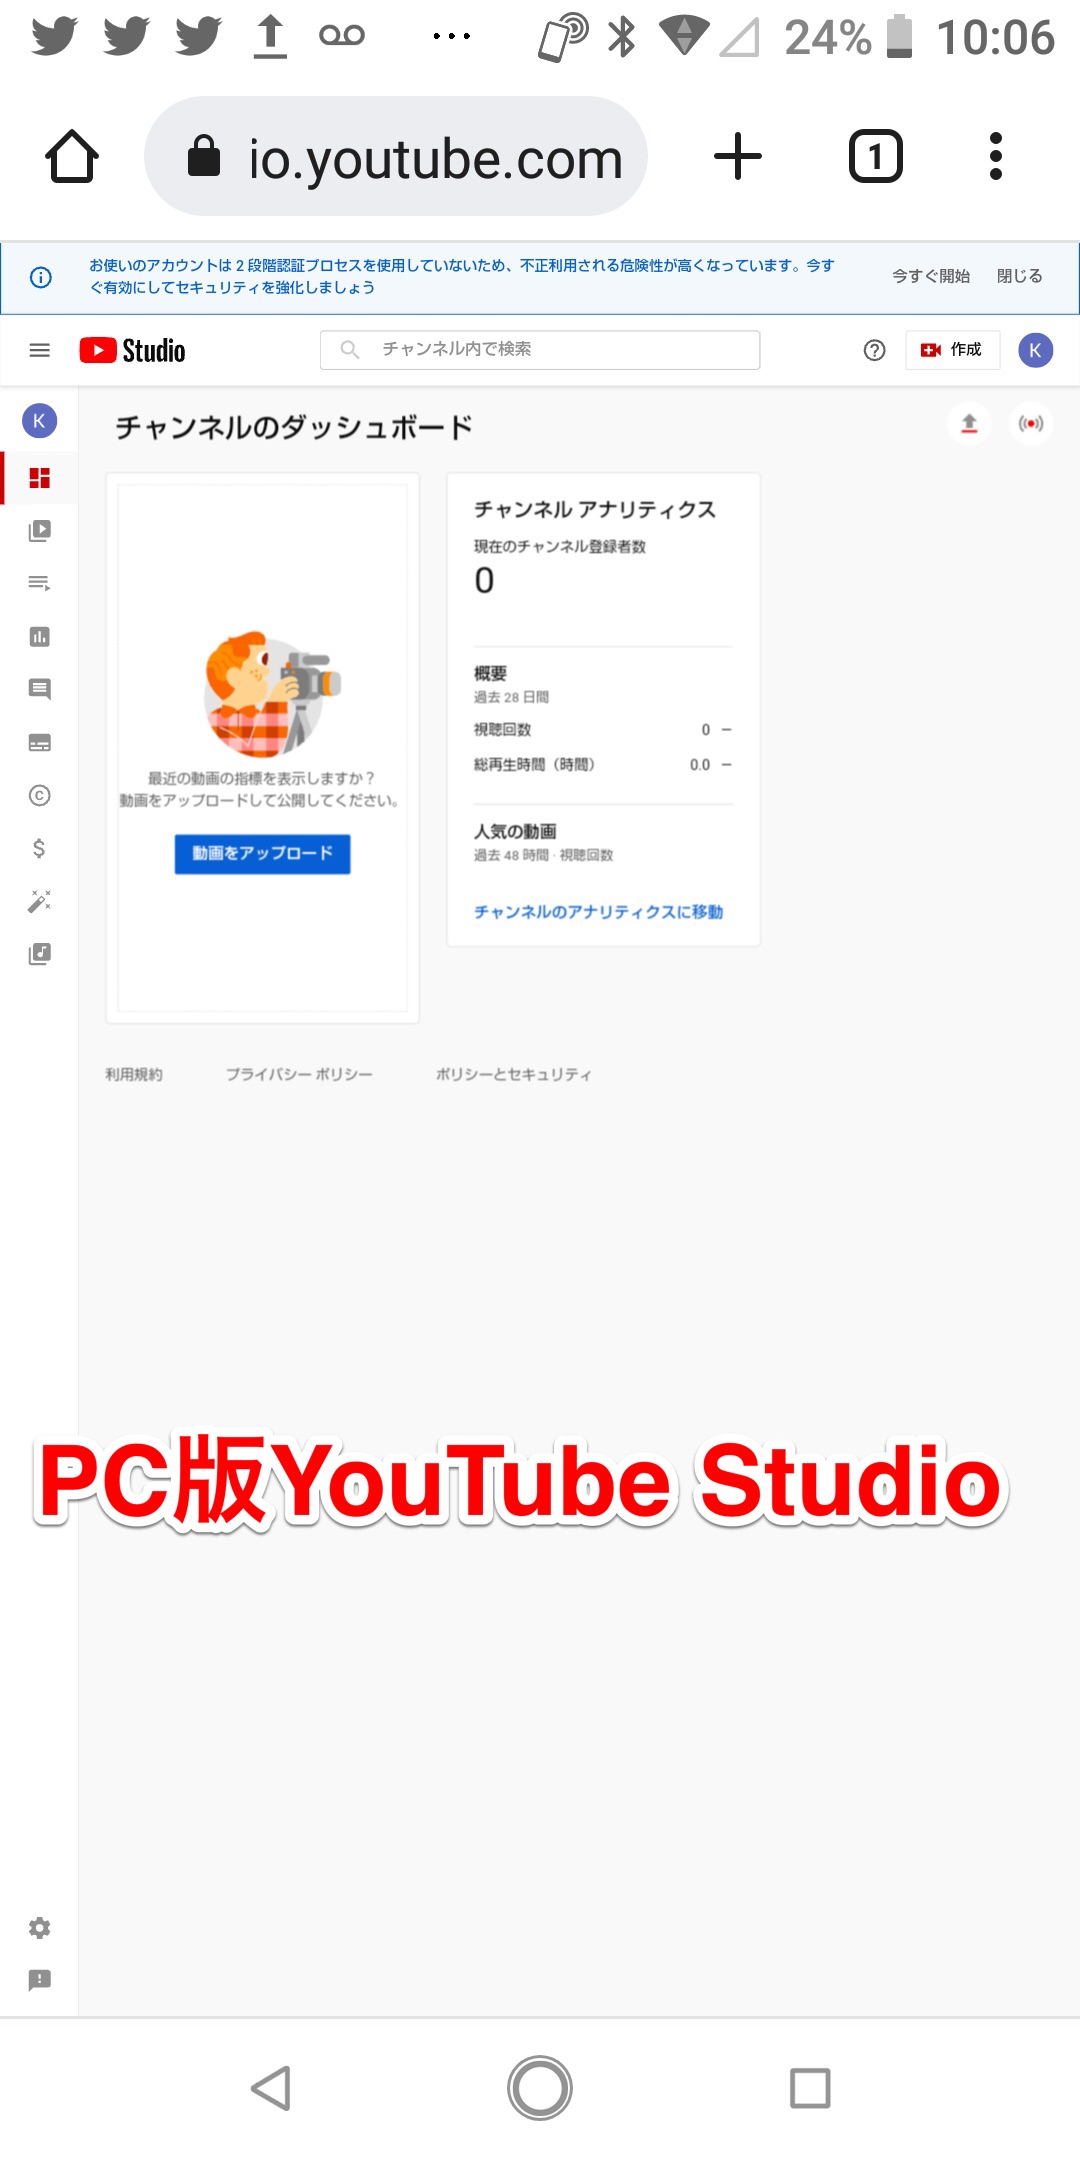 PC版YouTube Studio